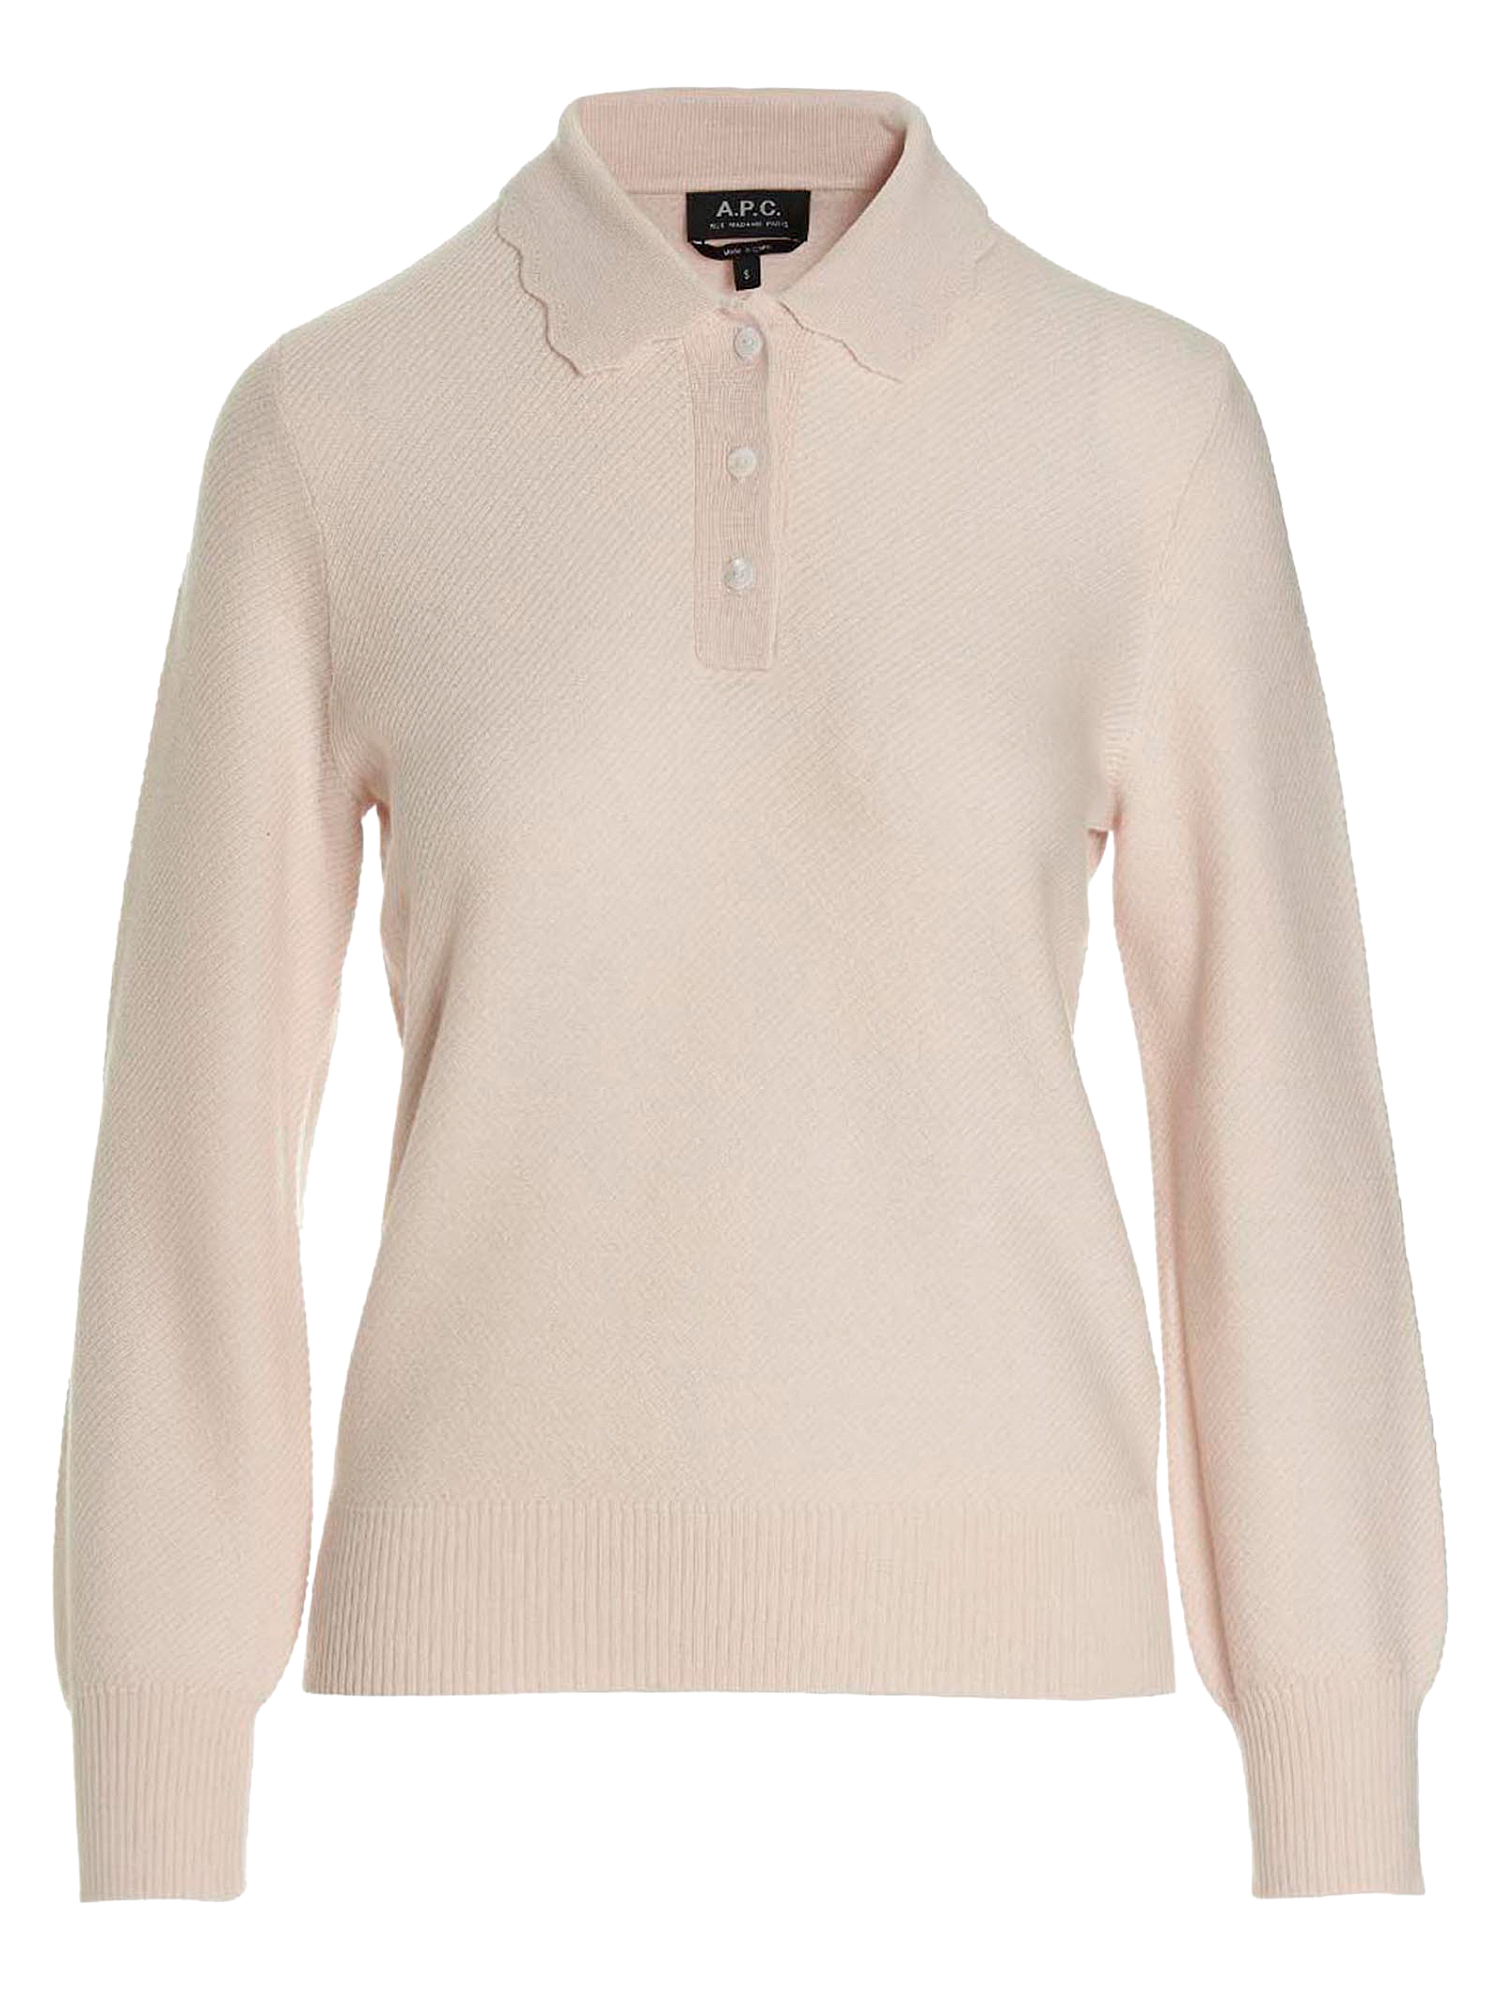 T-shirts Et Tops Pour Femme - A.P.C. - En Wool Pink - Taille:  -